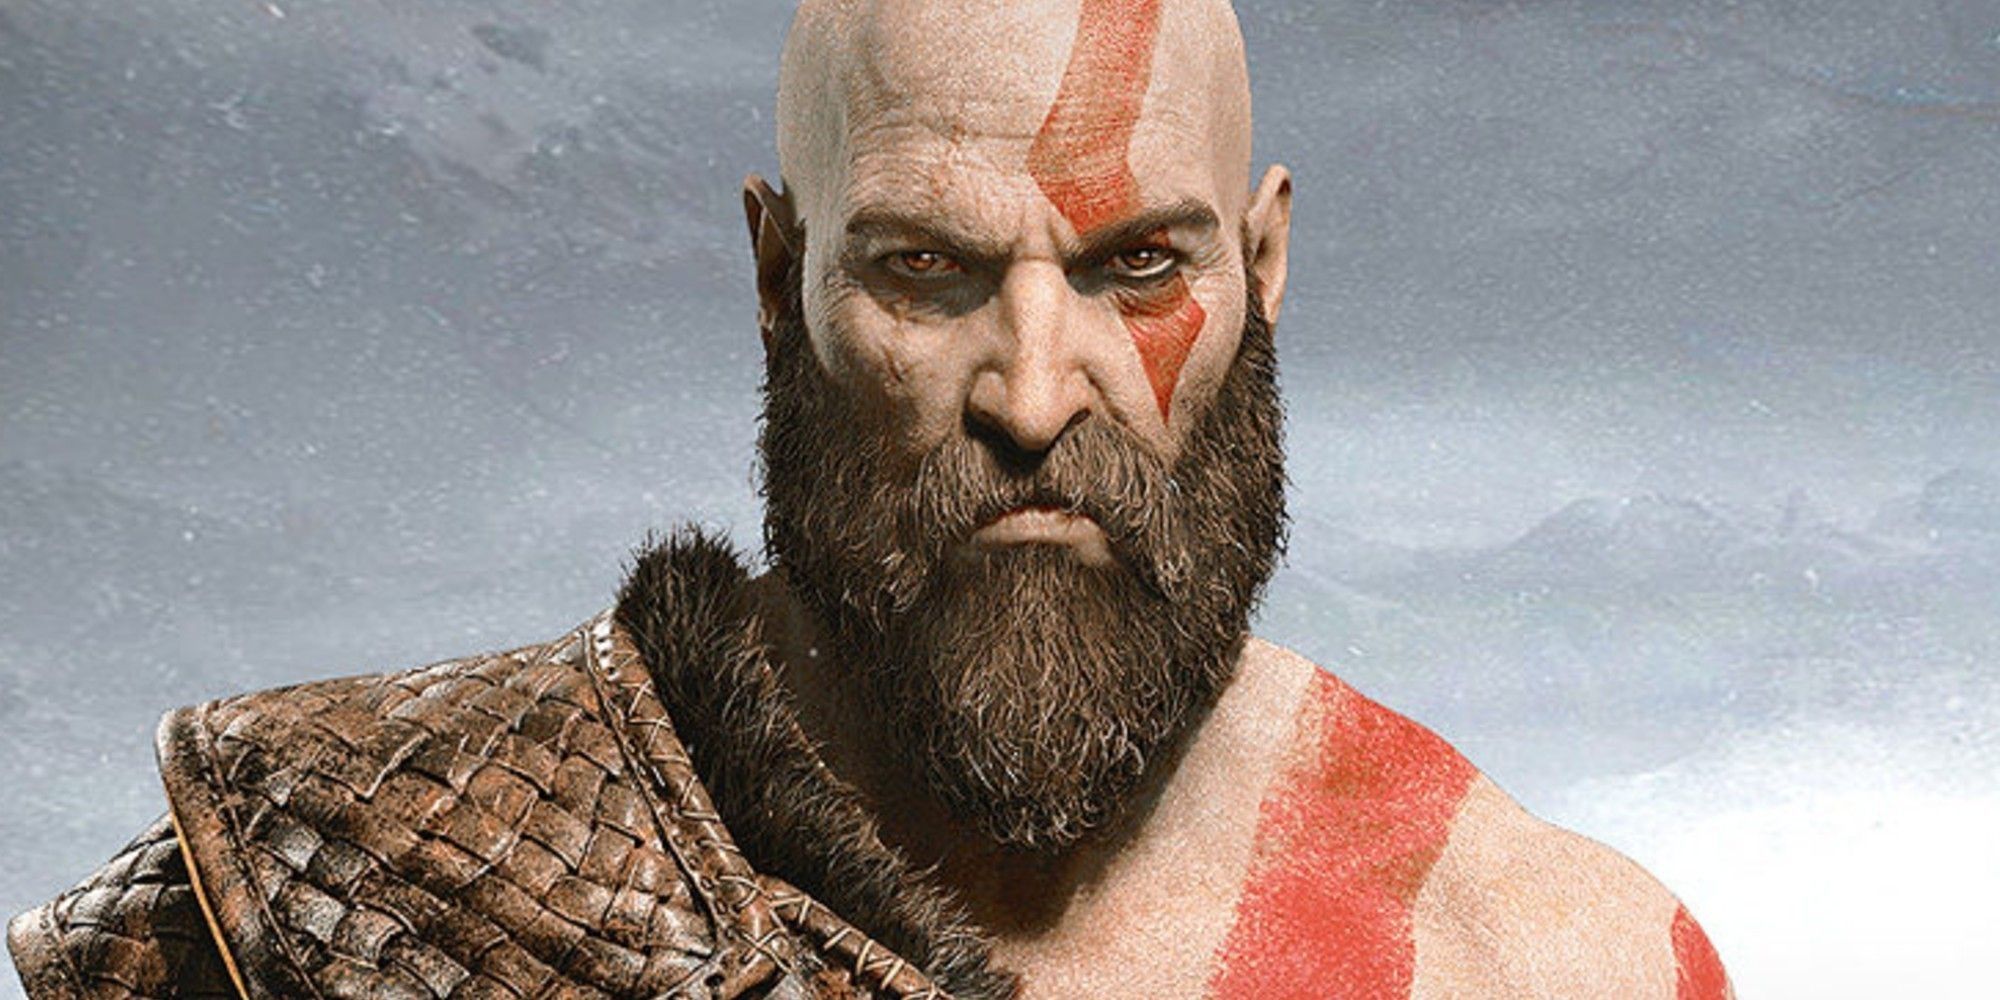 God of war chris judge as kratos with a big beard